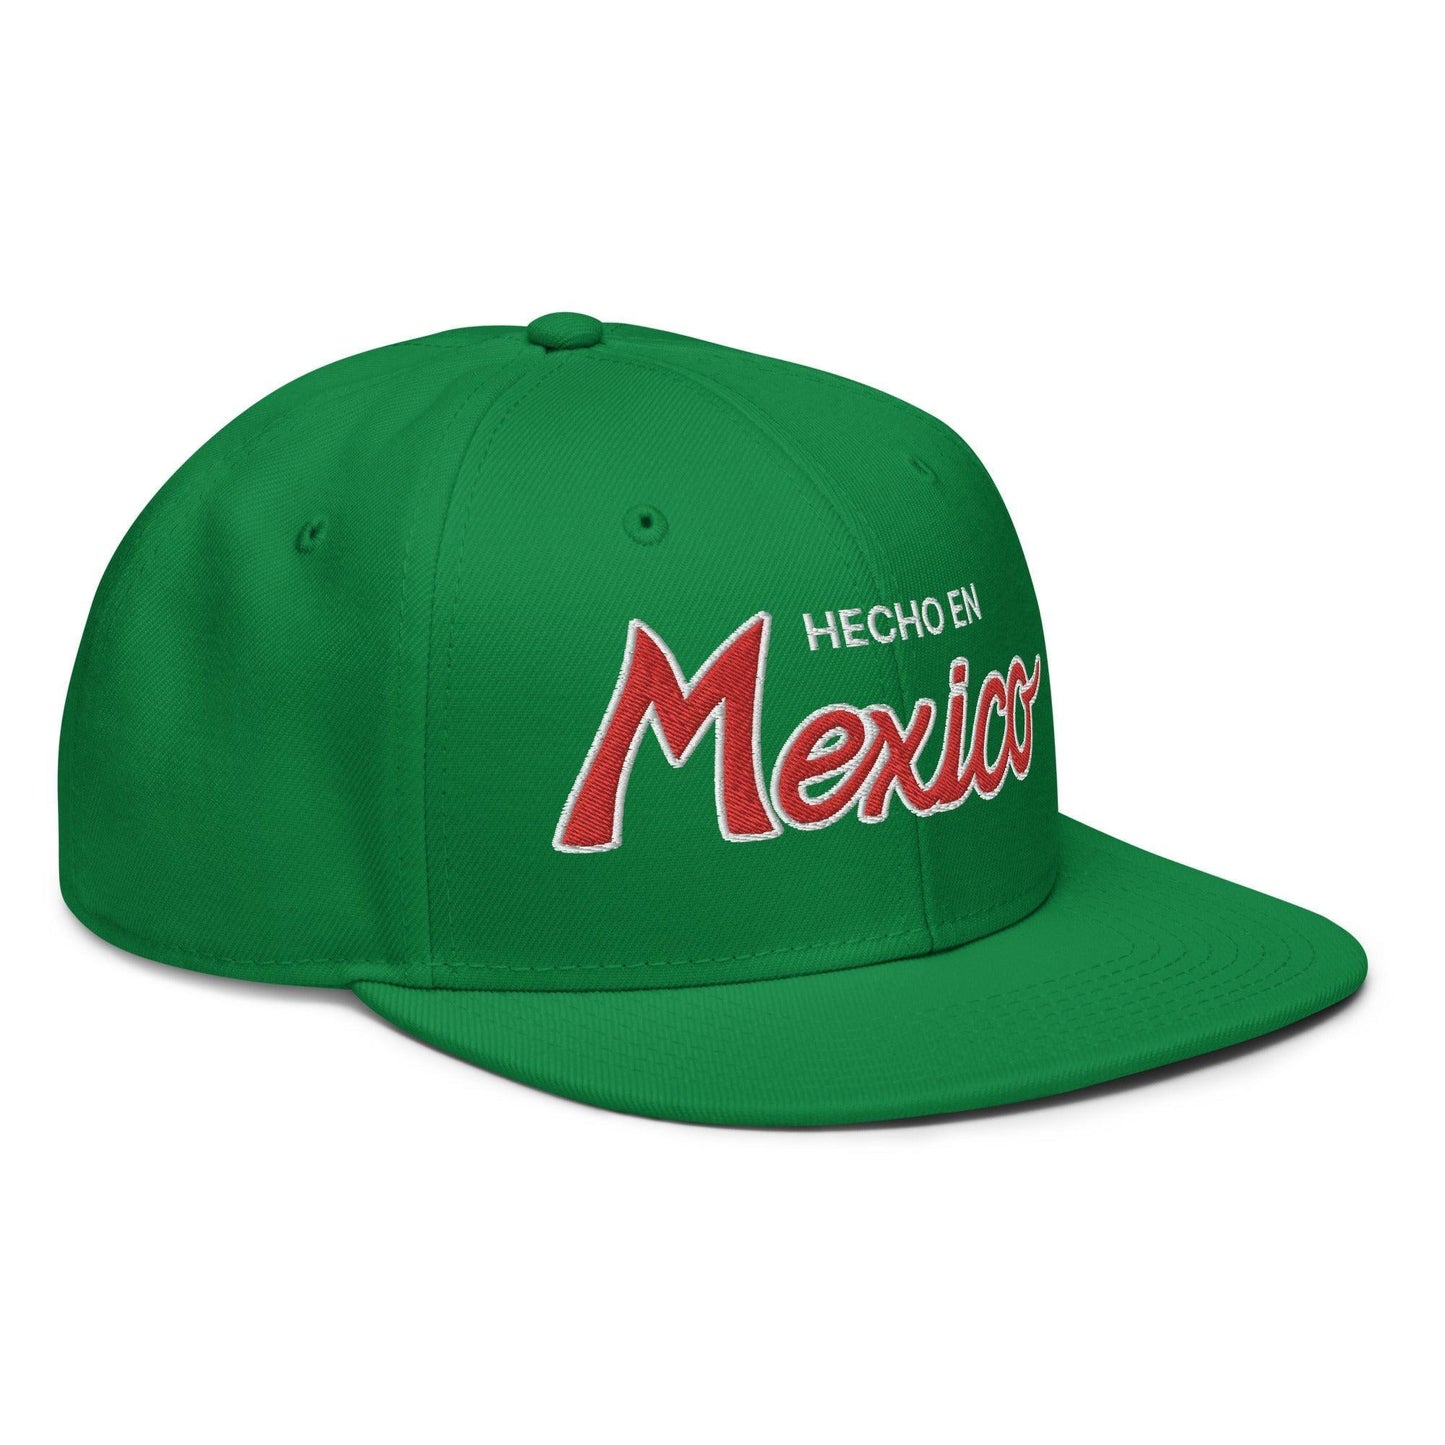 Hecho en Mexico II Script Snapback Hat Kelly Green by SCRIPT HATS | Script Hats